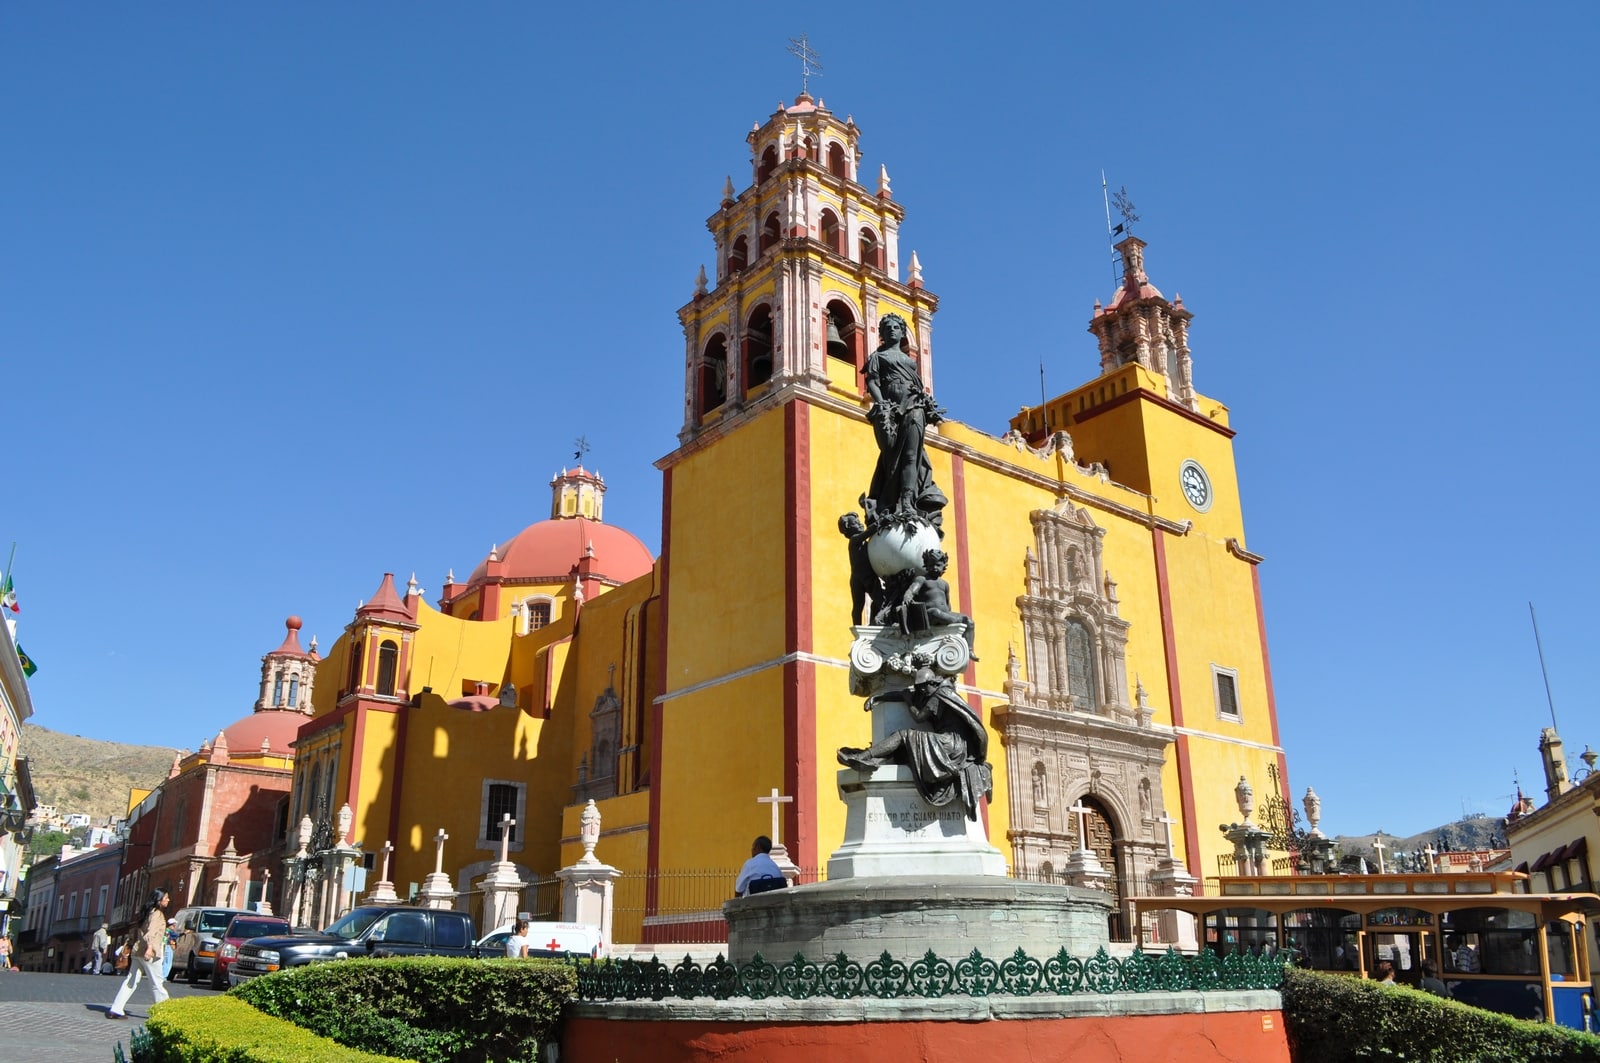 Monumento a la paz en la plaza del centro de Guanajuato. Imagen tomada de internet.